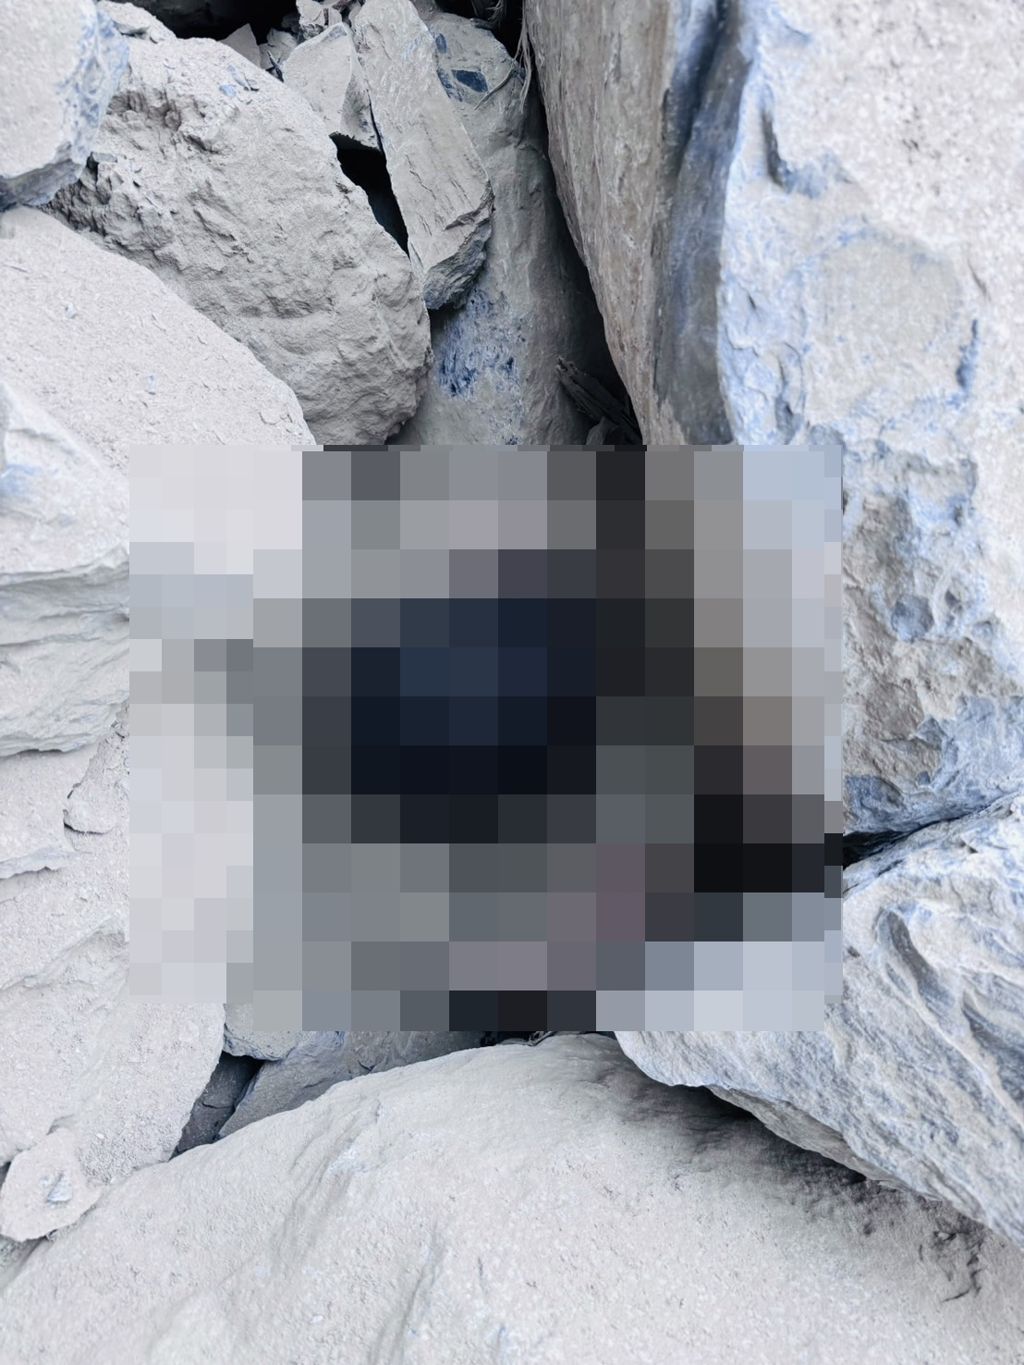 砂卡礑步道巨石堆中發現2具遺體。 中時